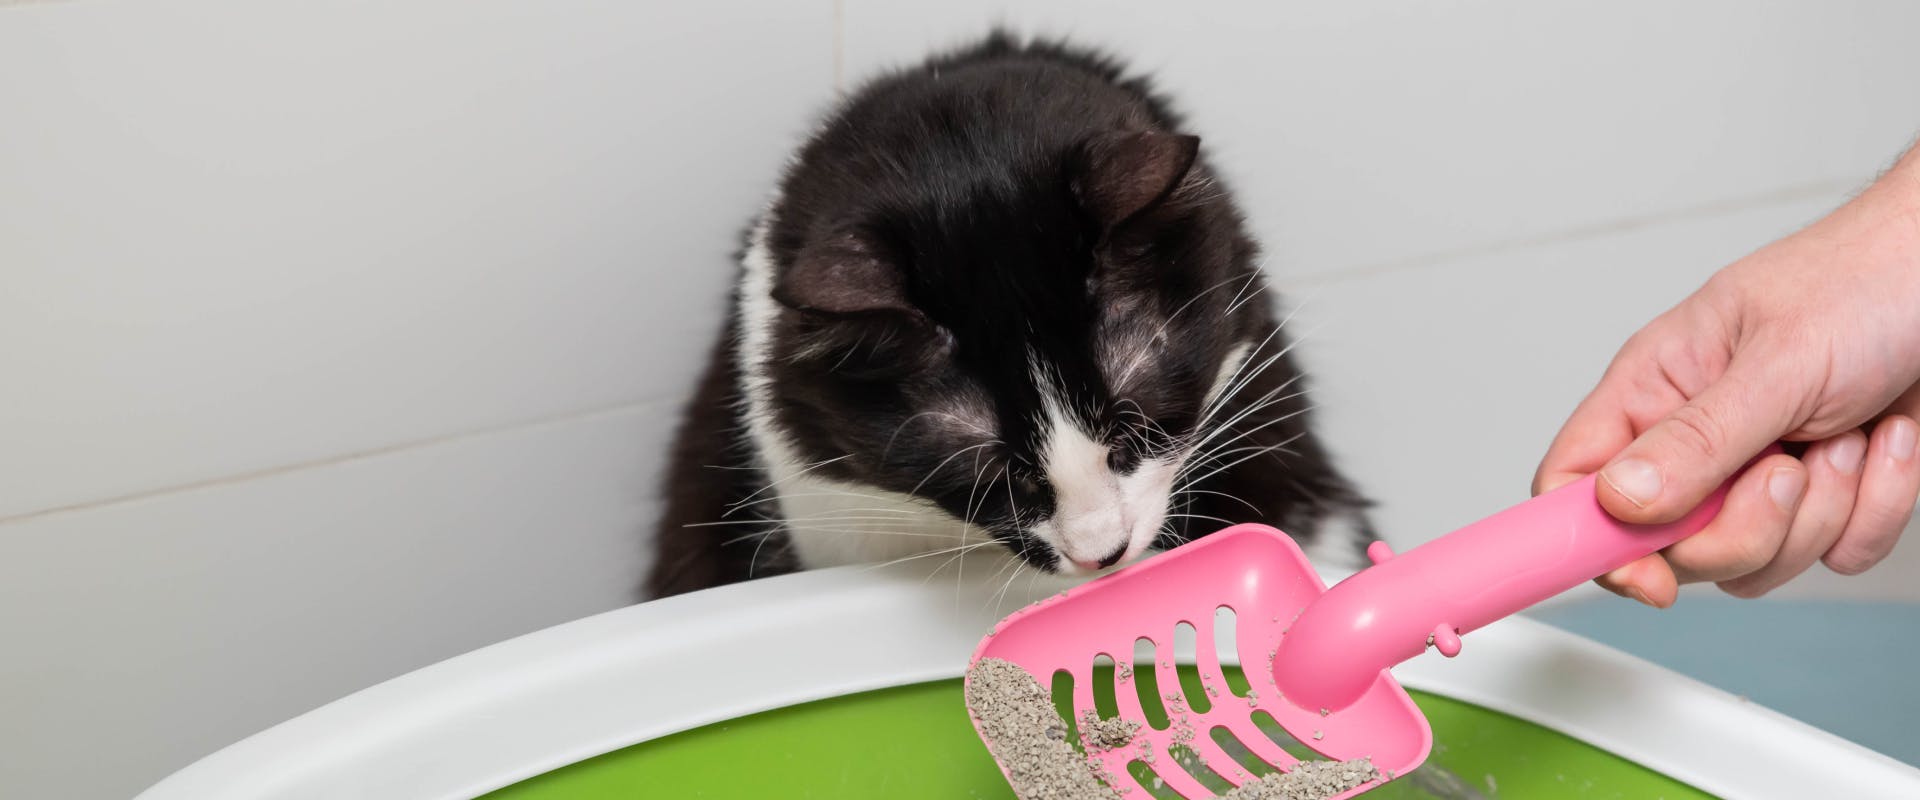 A constipated cat sniffs a litter box.